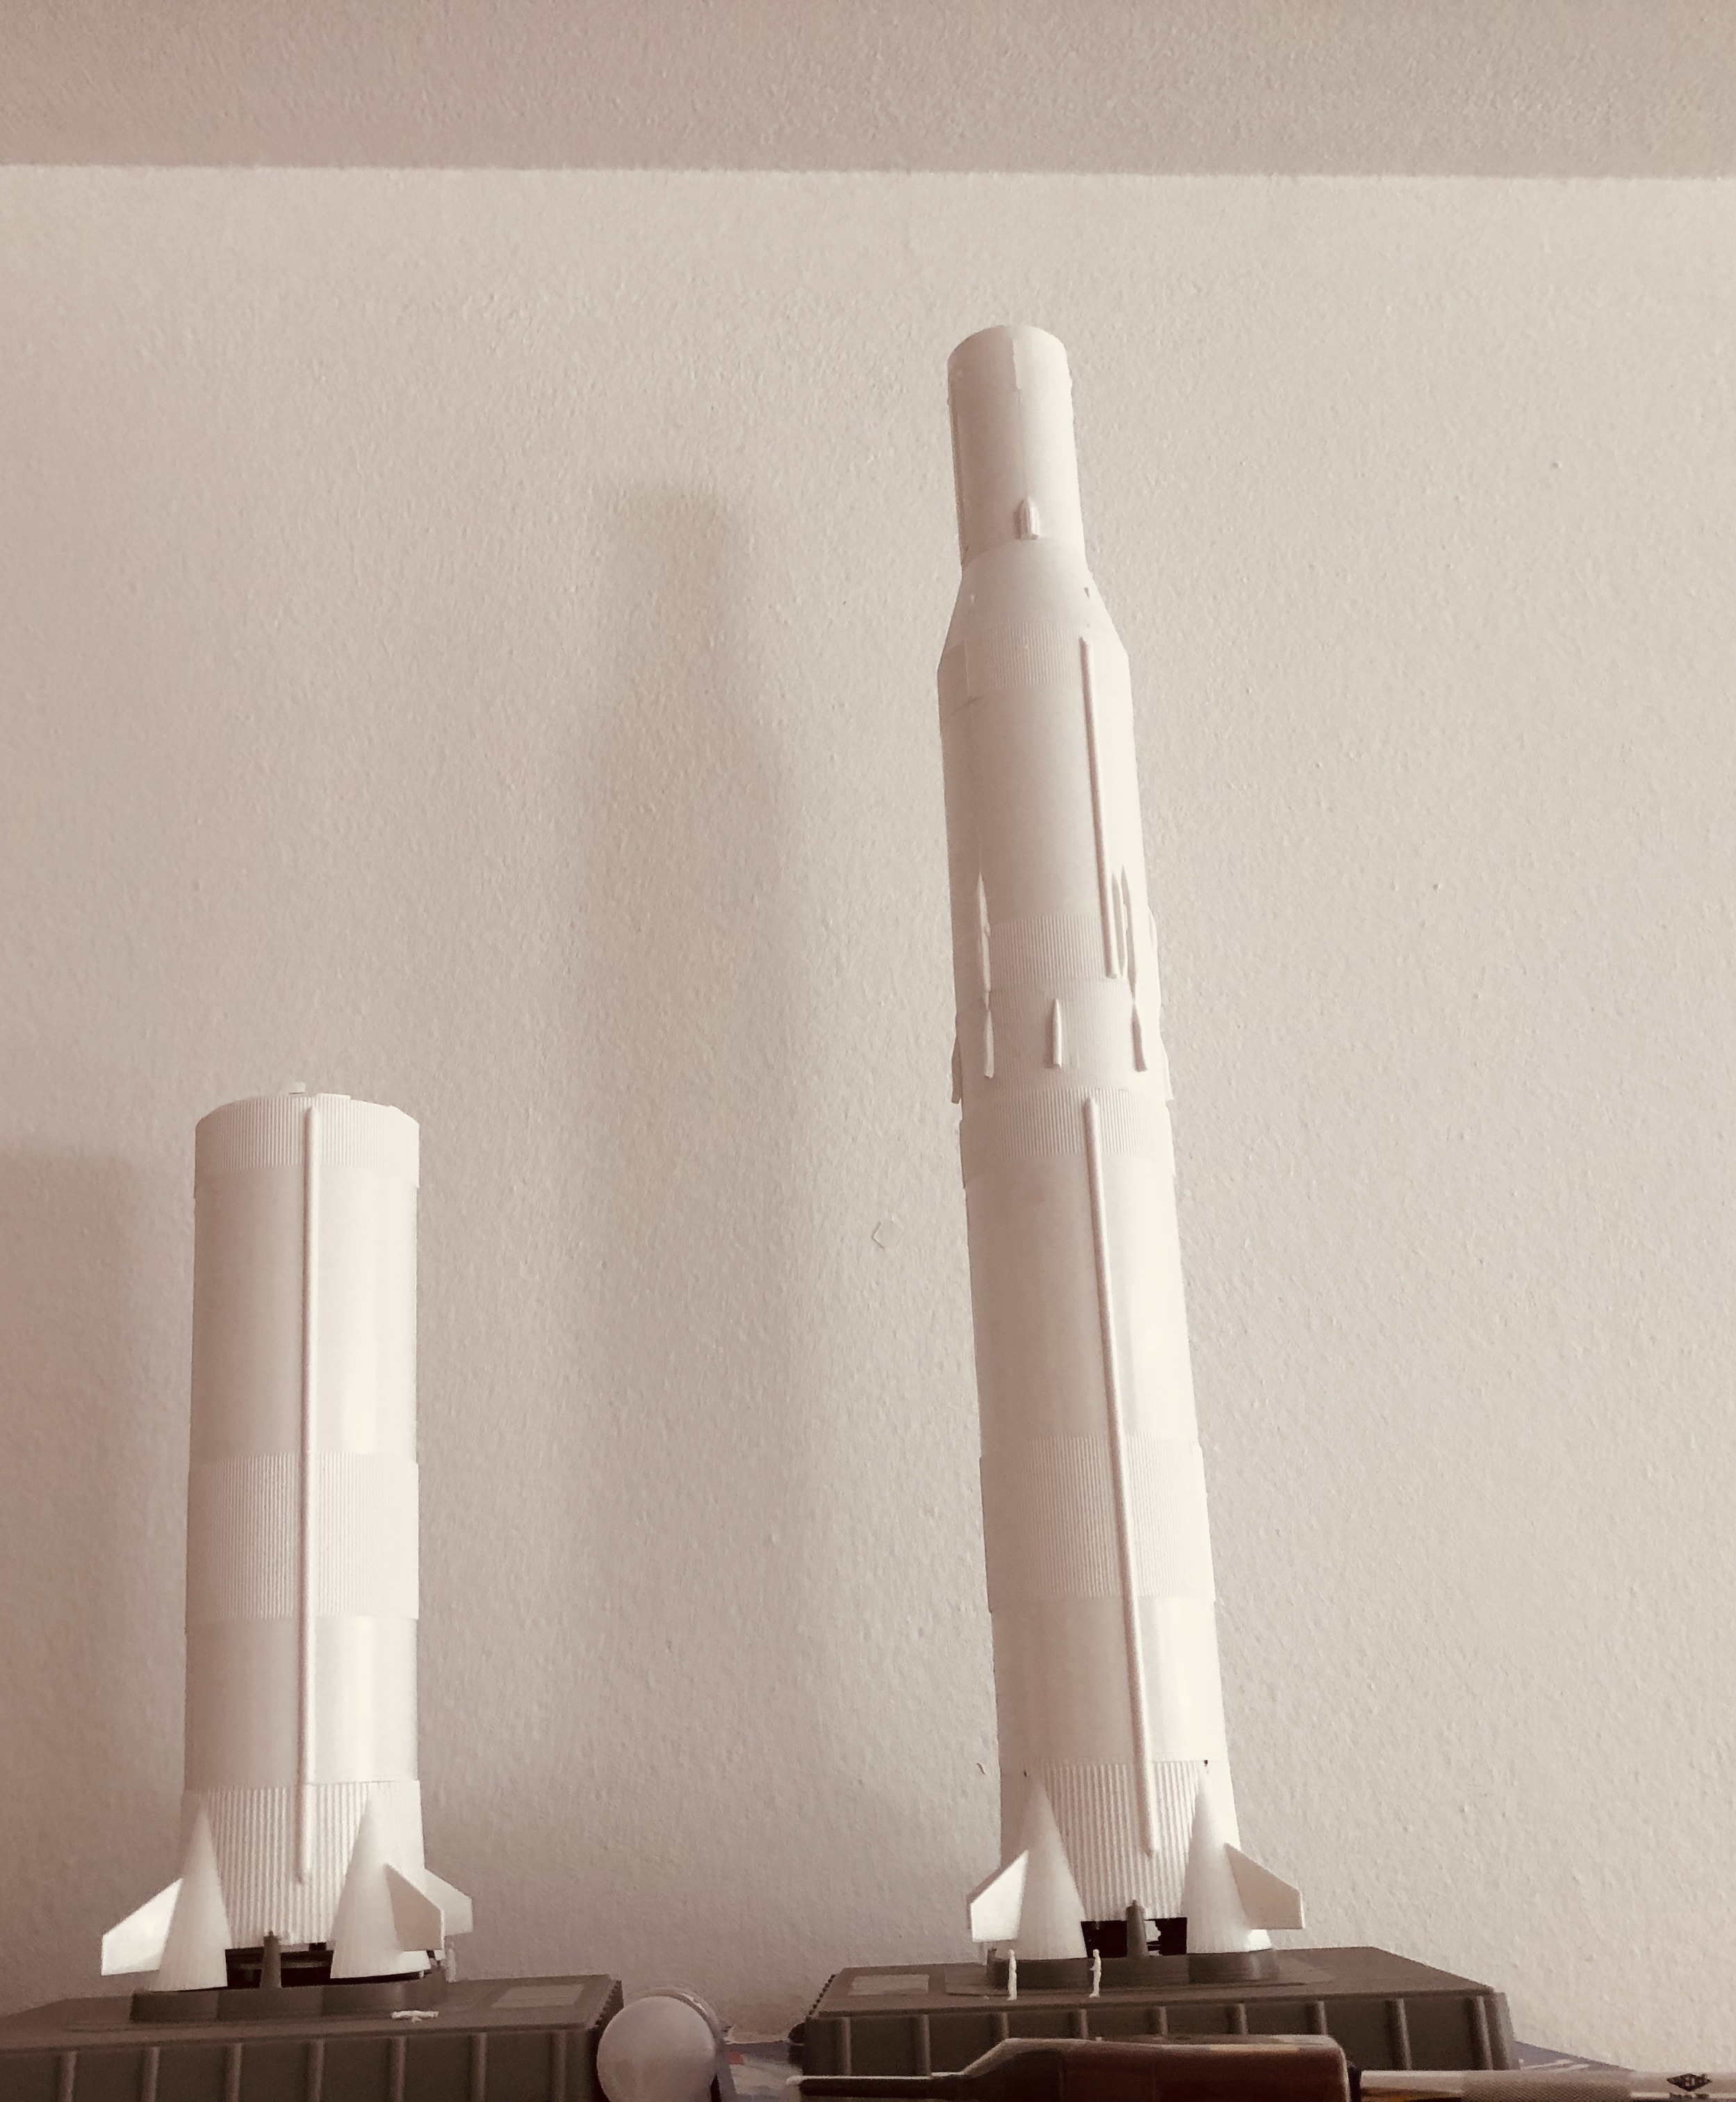 rocket models